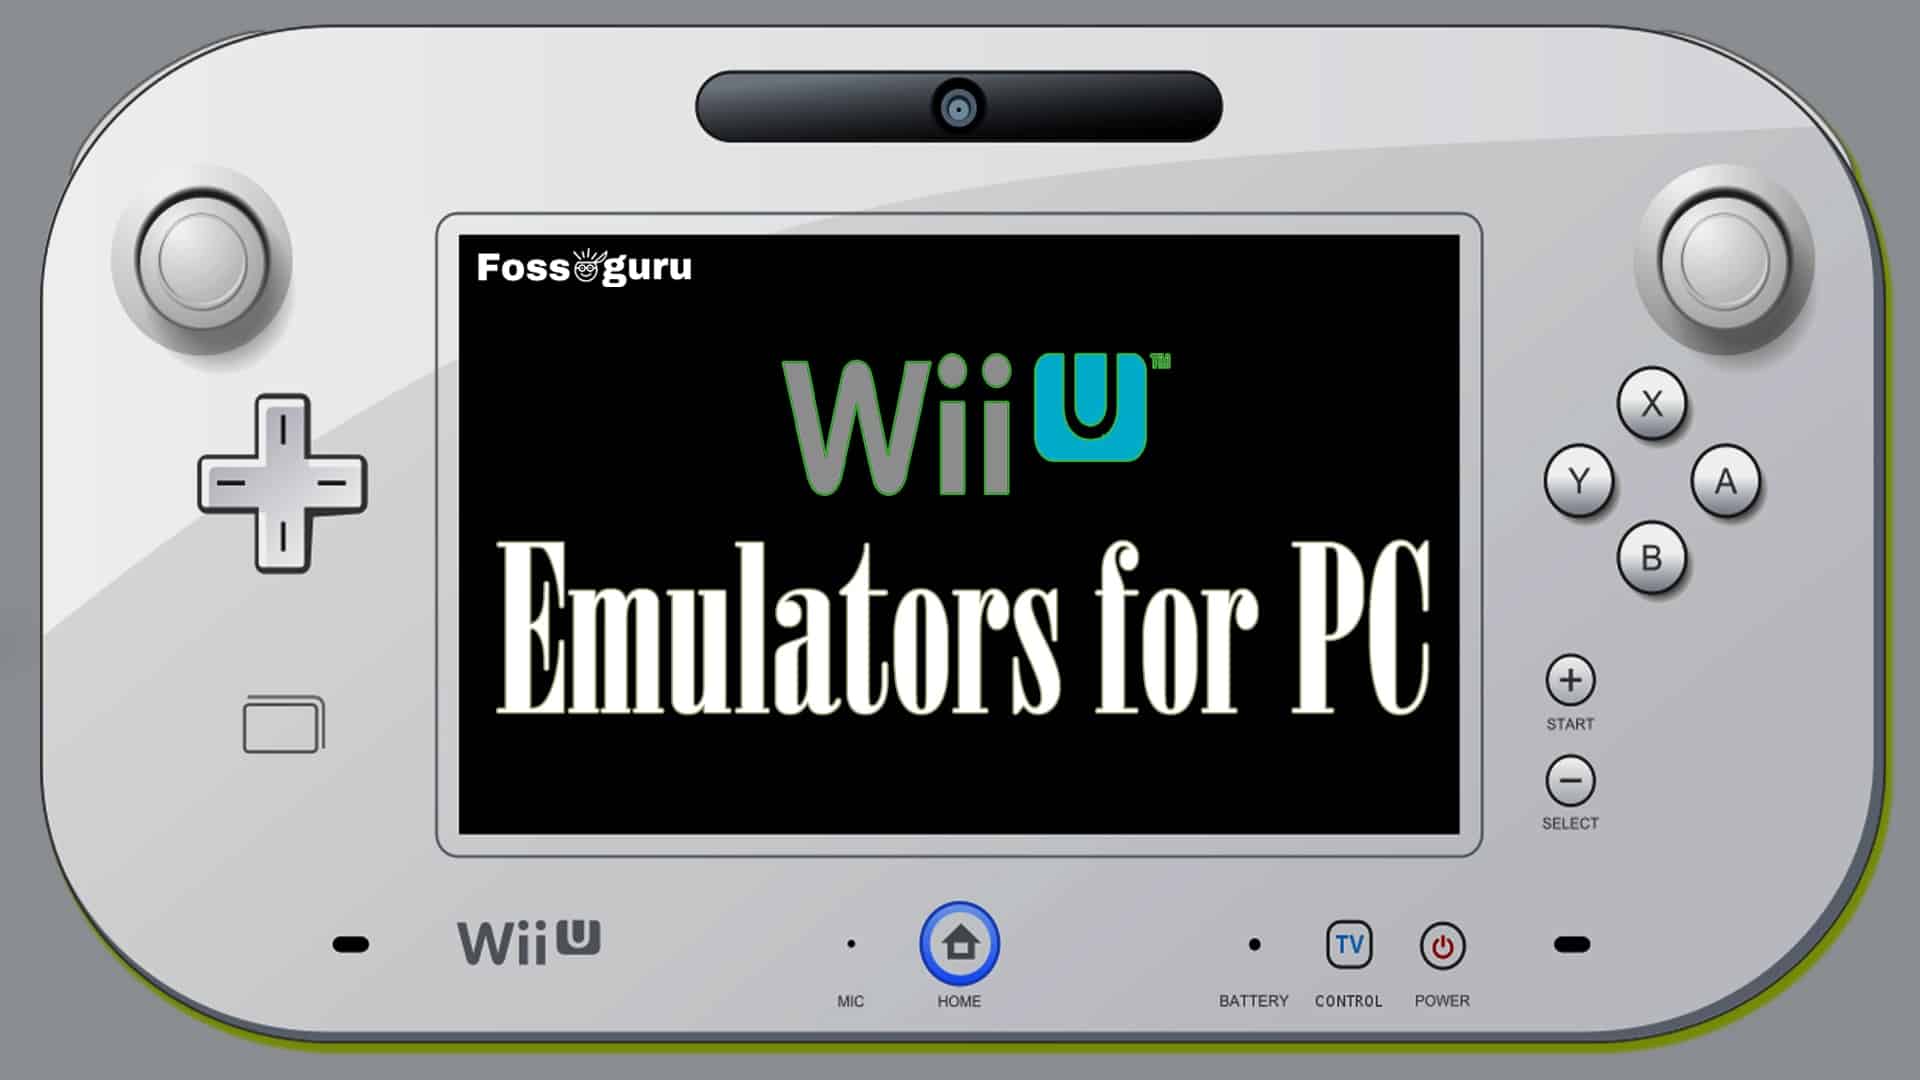 Wii U emulator - Cemu 1.3.0 Wii U emulator for Windows released